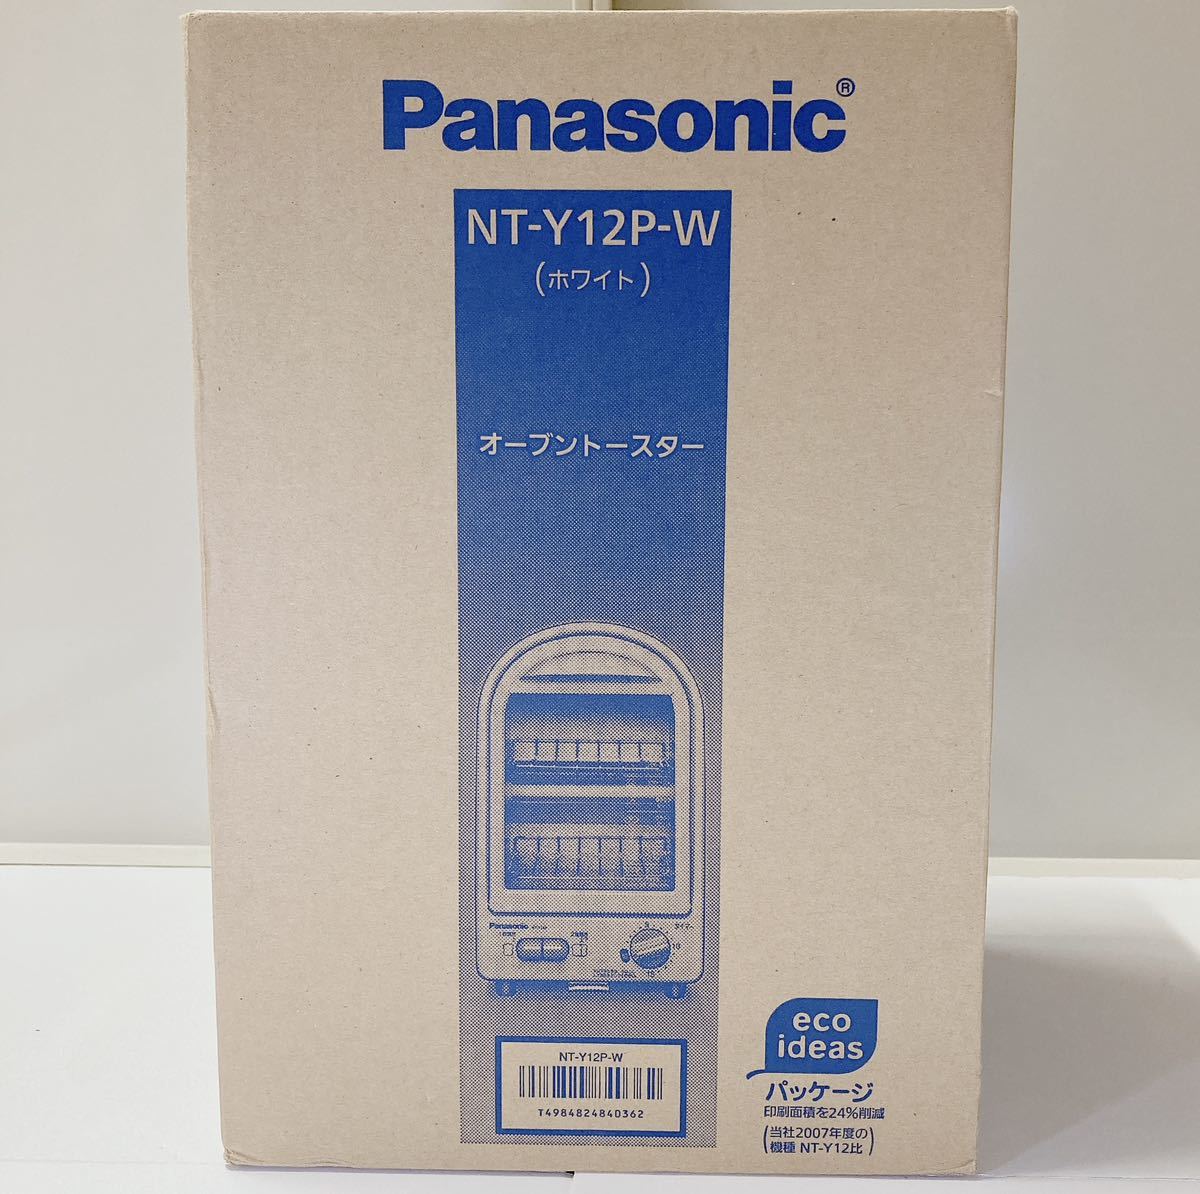 【新品未使用・生産終了品】Panasonic パナソニック オーブントースター NT-Y12P-W ホワイト 2枚焼き 2階建て